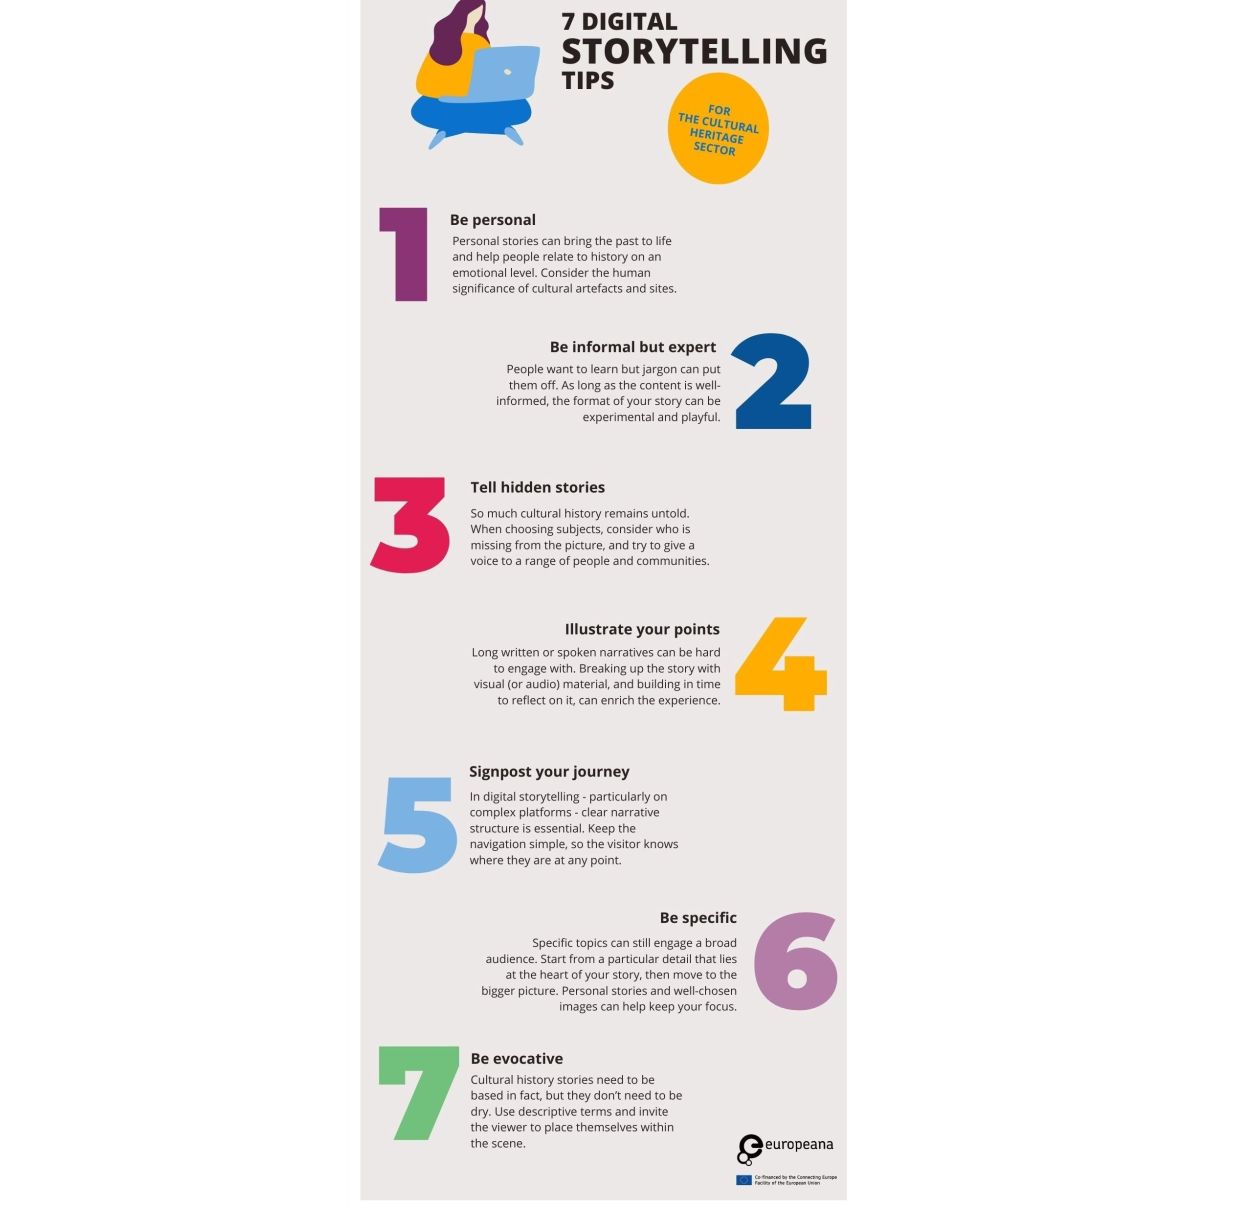 Seven tips for digital storytelling - full text above